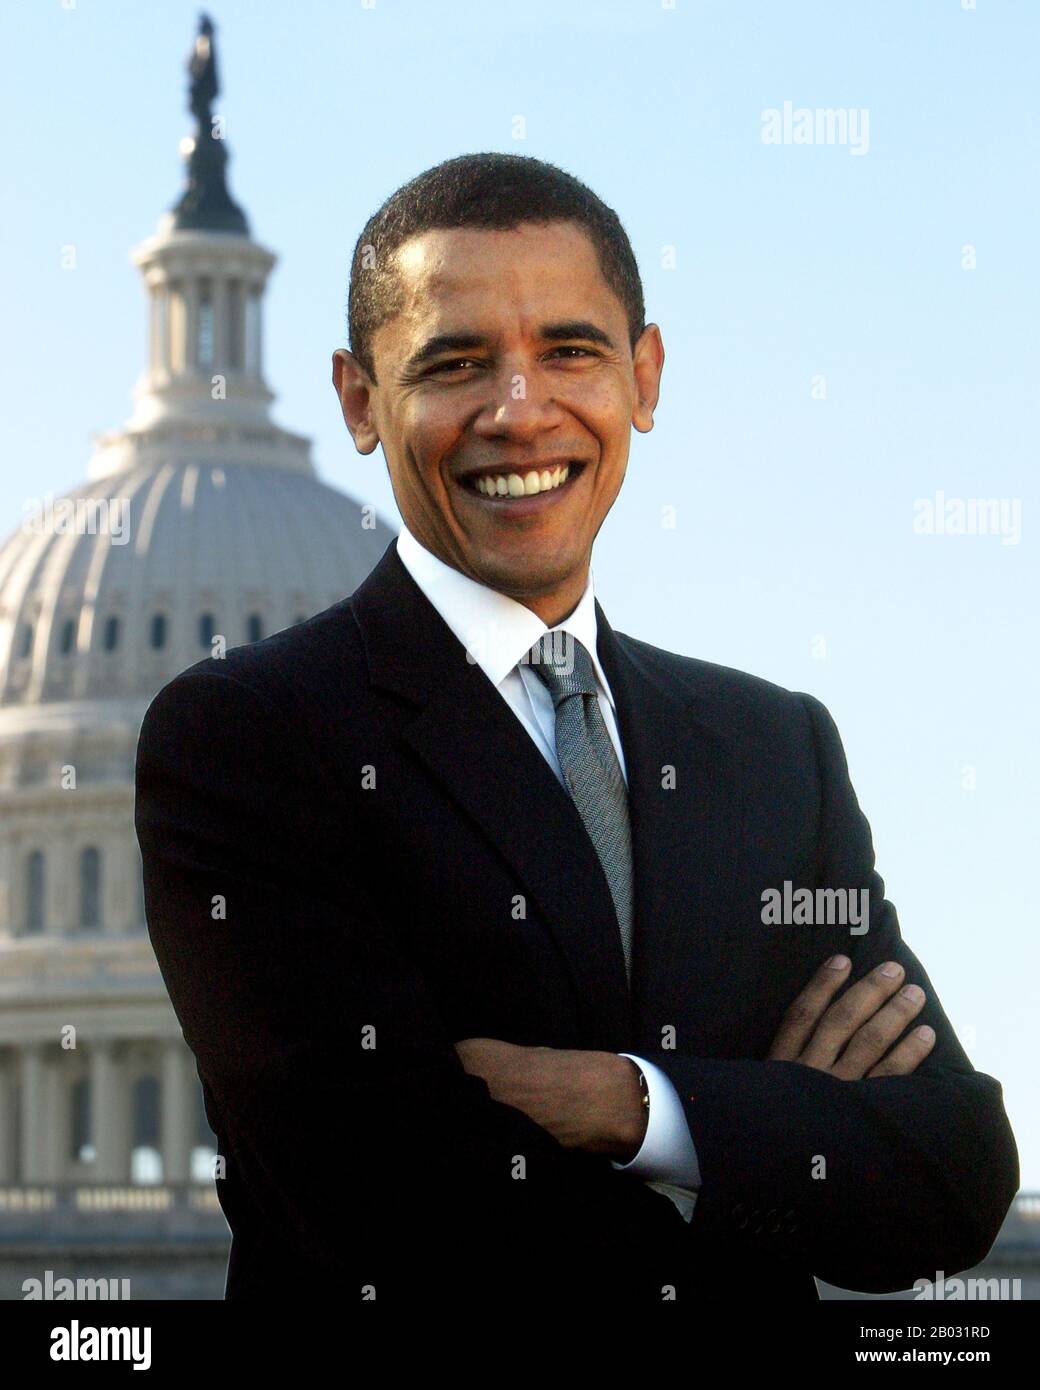 Barack Hussein Obama II (nacido el 4 de agosto de 1961) es el 44 y actual Presidente de los Estados Unidos, así como el primer afroamericano en ocupar el cargo. Nacido en Honolulu, Hawai, Obama se graduó en la Universidad de Columbia y en la Facultad de Derecho de Harvard, donde fue presidente de la Harvard Law Review. Foto de stock